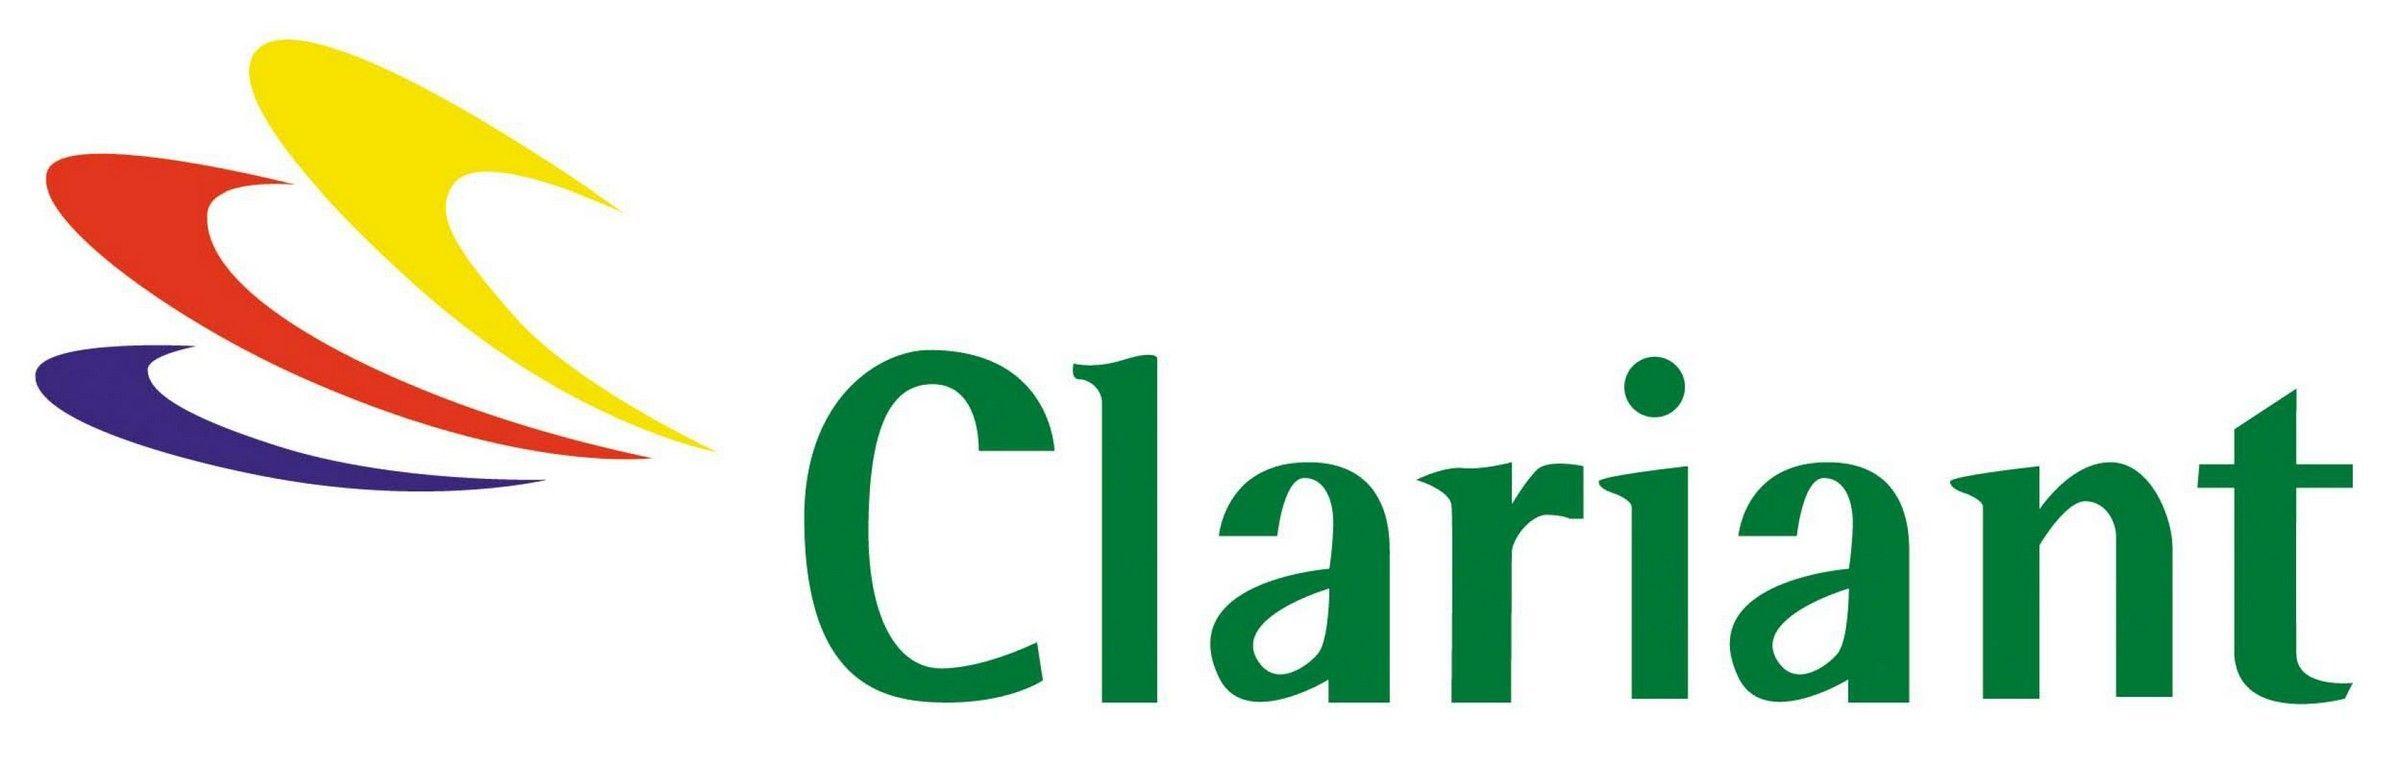 Clariant Logo - clariant-logo | LogoMania | Logos, Vector icons, Clip art